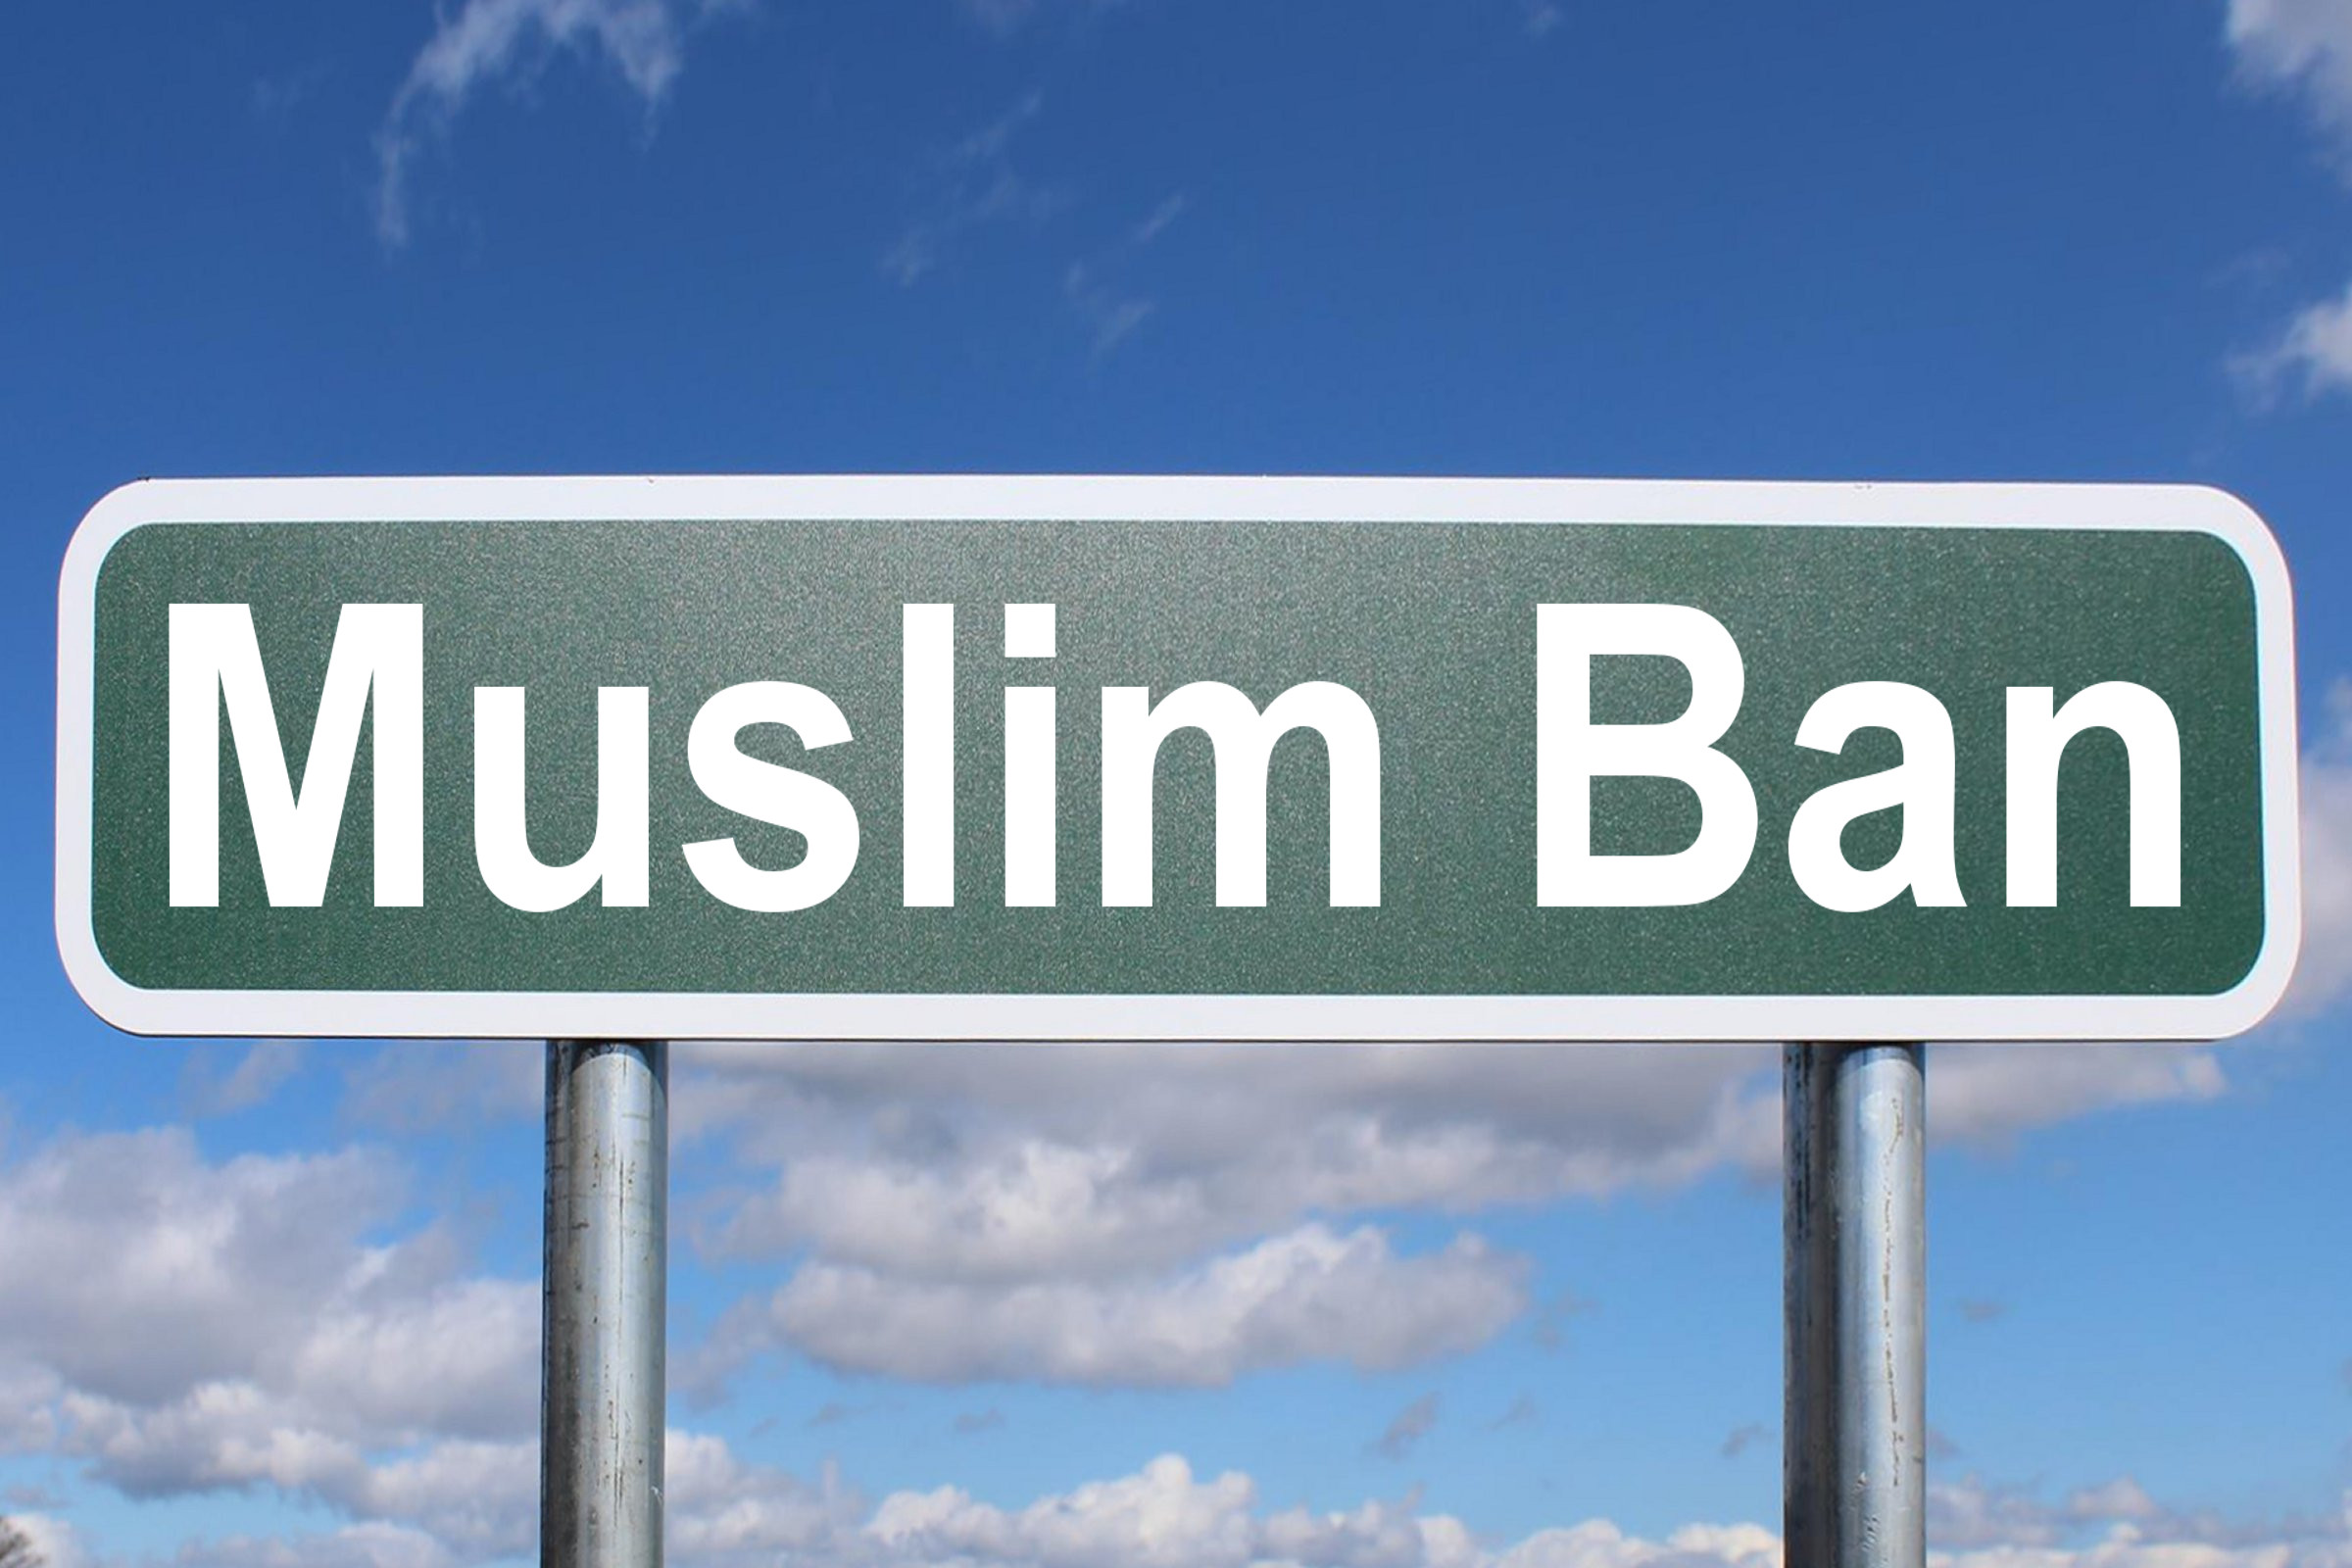 muslim ban